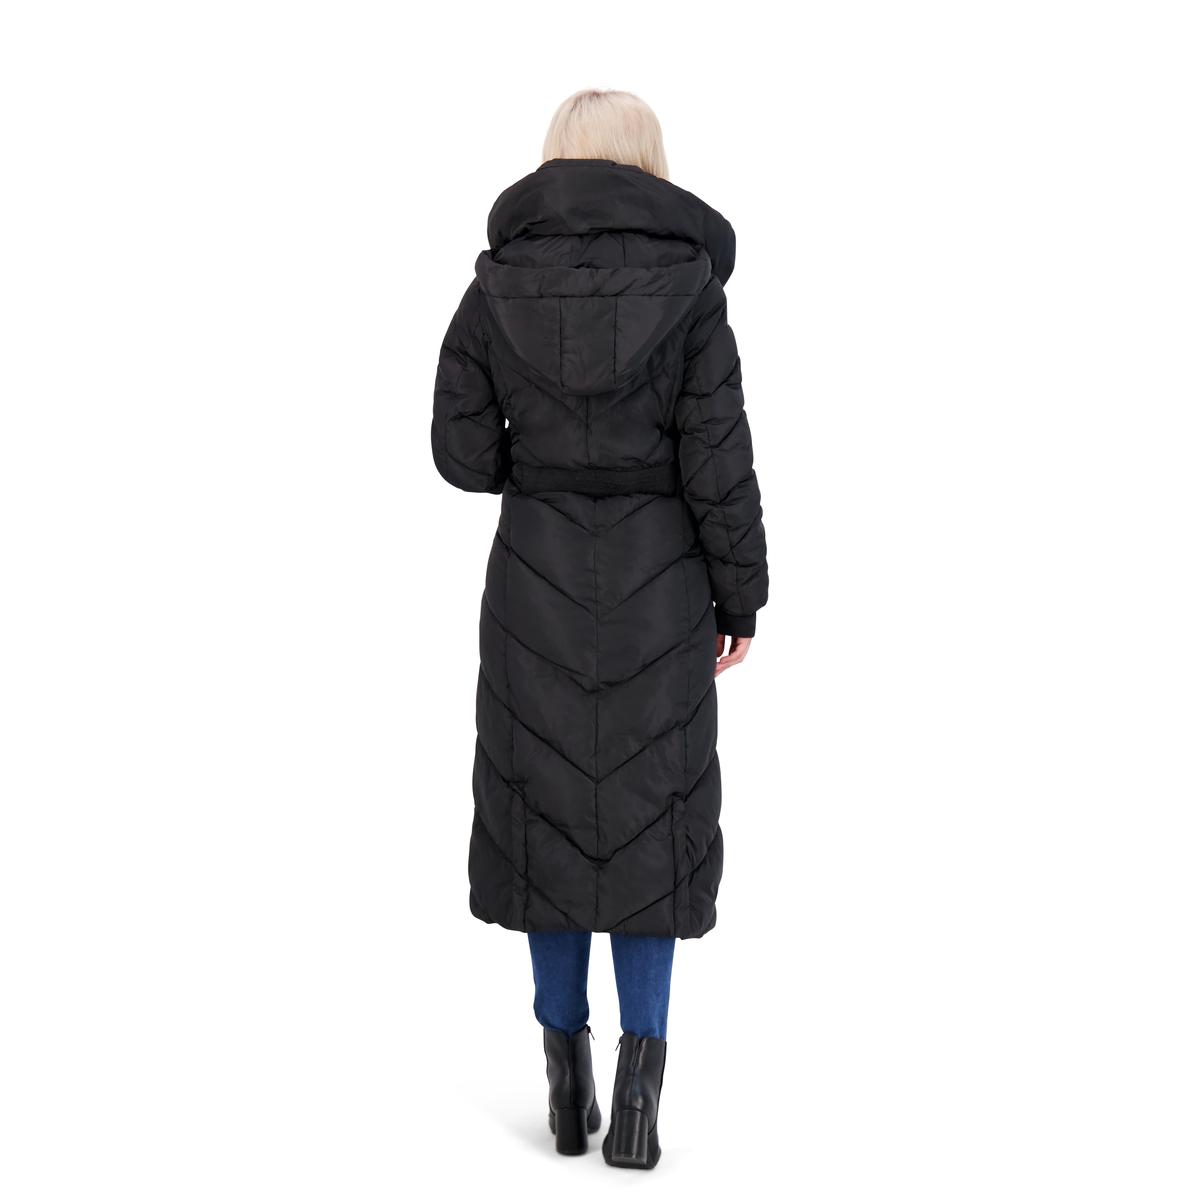 Steve Madden Long Puffer Coat for Women- Fleece Lined Warm Winter Maxi ...